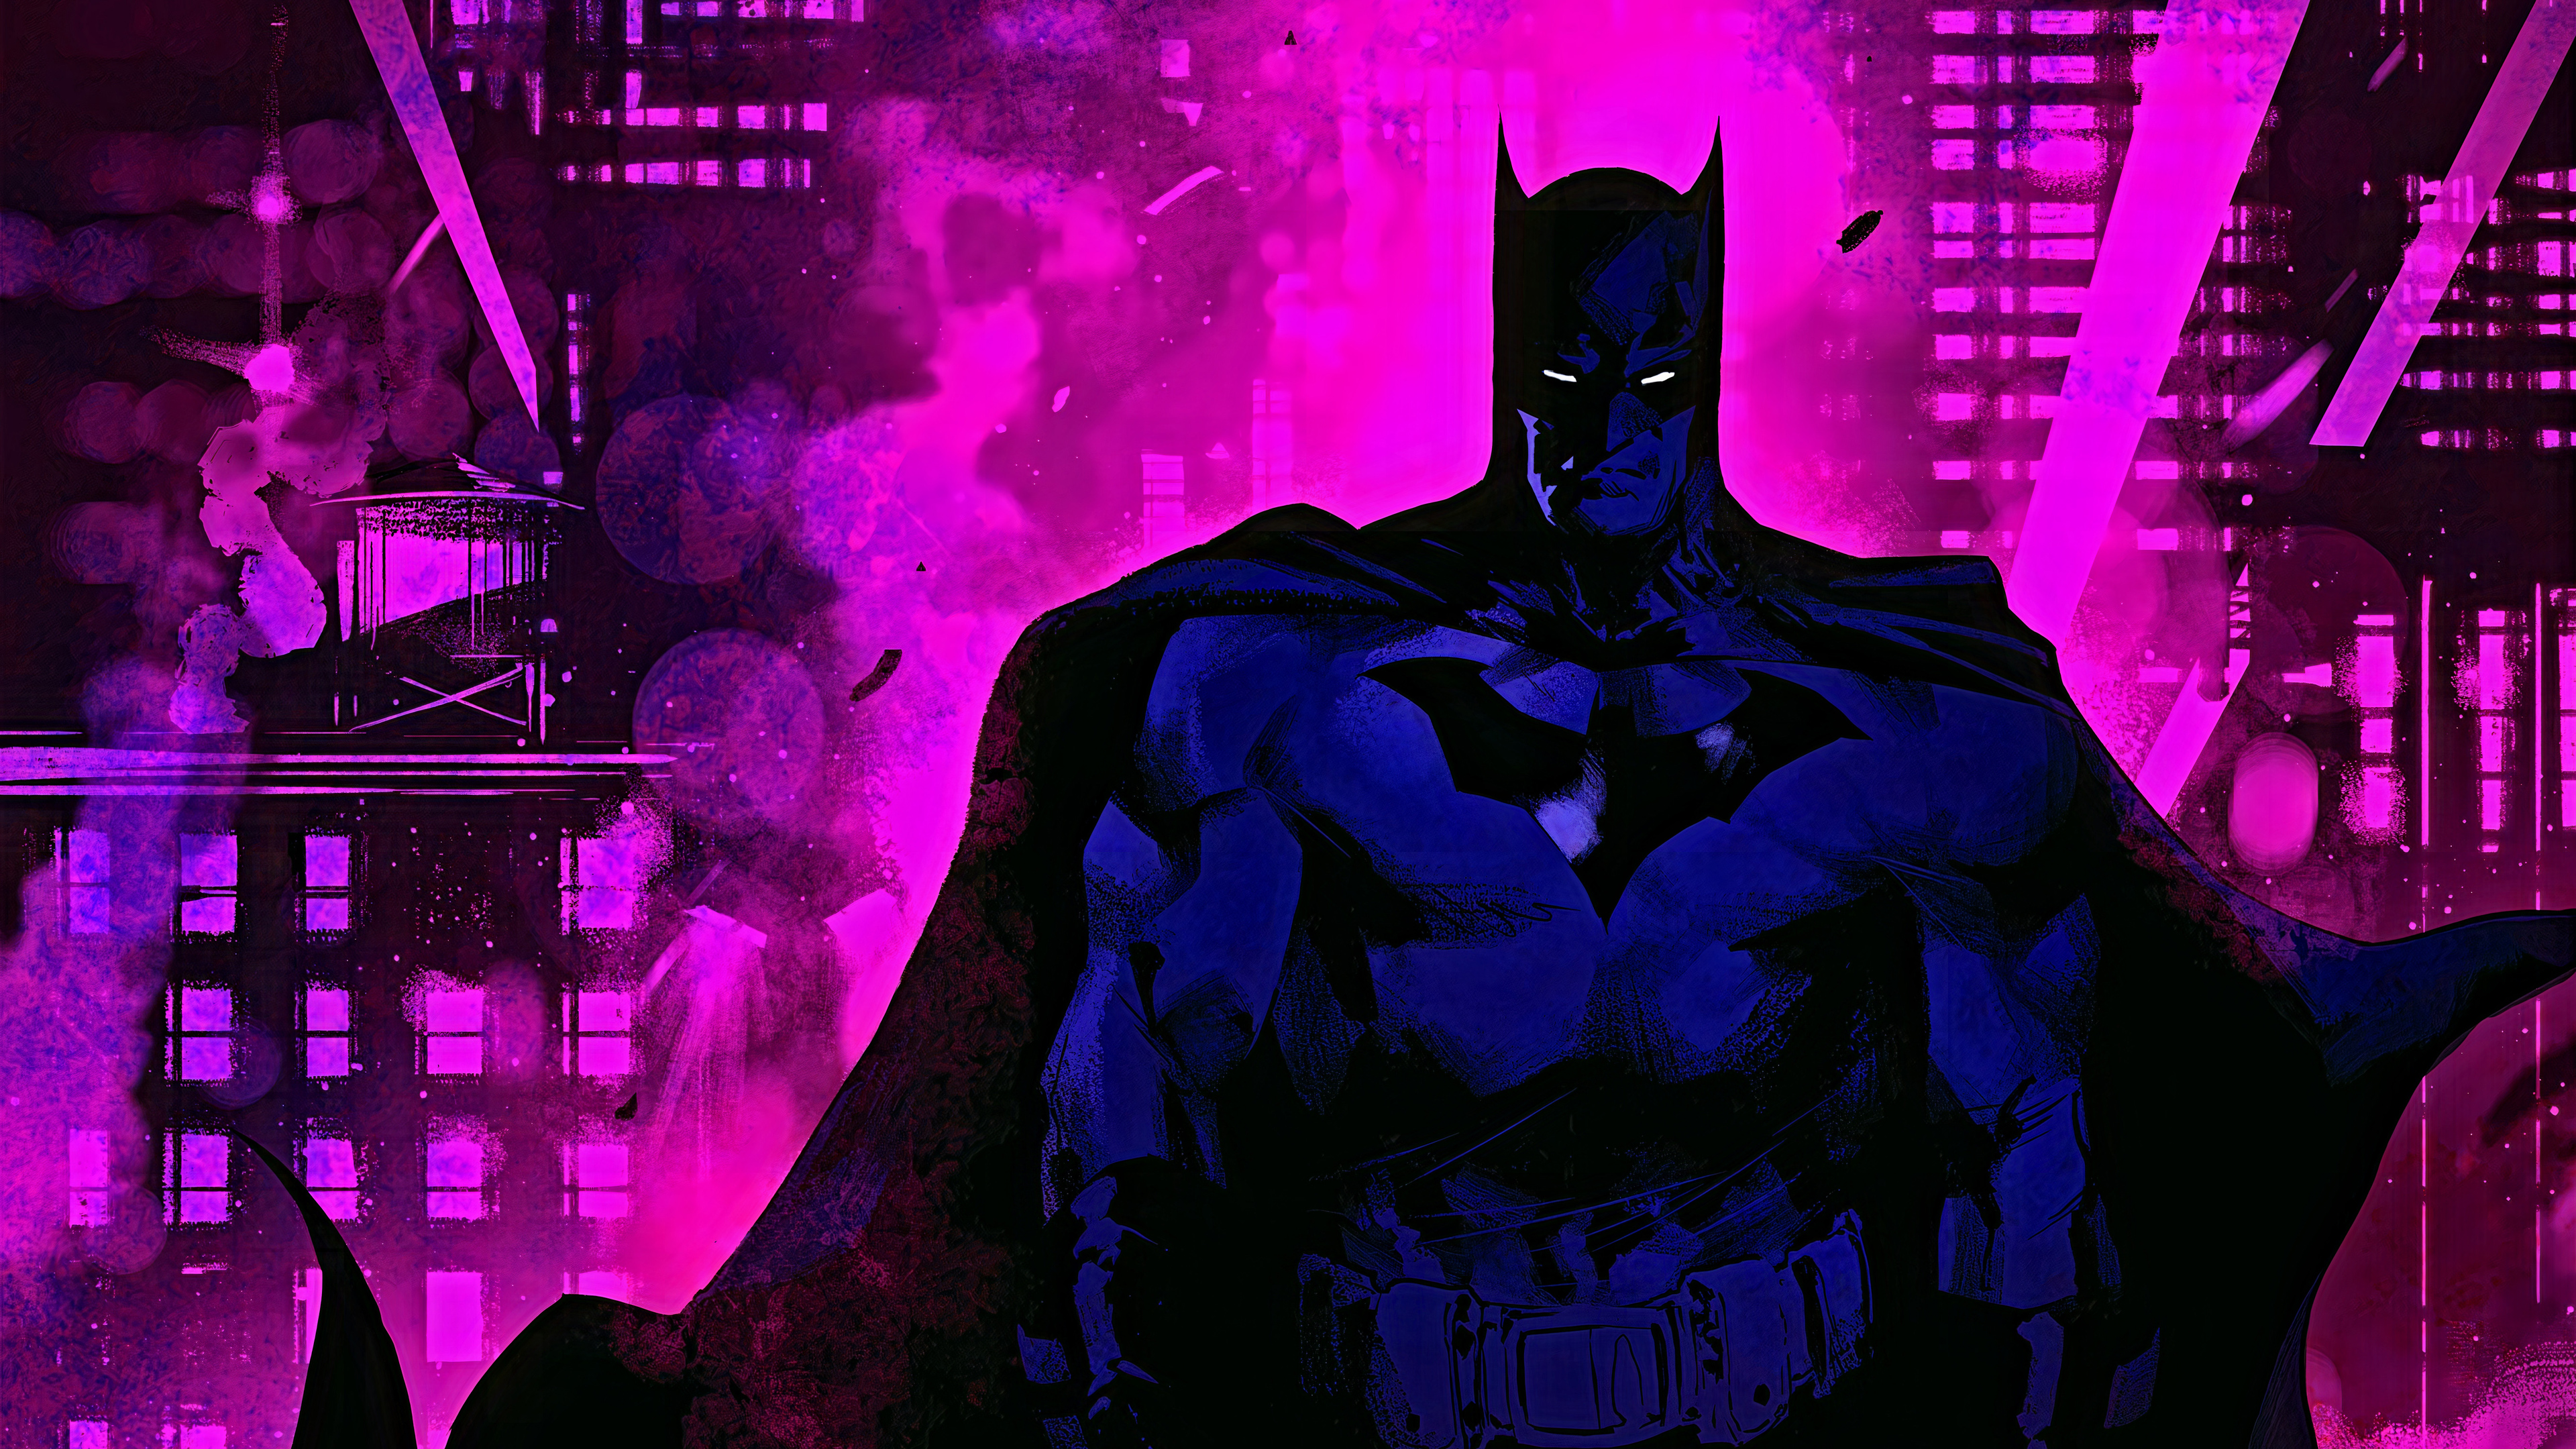 Siêu anh hùng Batman sẽ làm sống lại những kỷ niệm tuổi thơ của bạn. Hãy tải về hình nền độ phân giải cao Ultra HD này và nhanh chóng đưa bức tranh yêu thích của bạn trở thành màn hình chính trên thiết bị của mình. Cập nhật ngay nào!